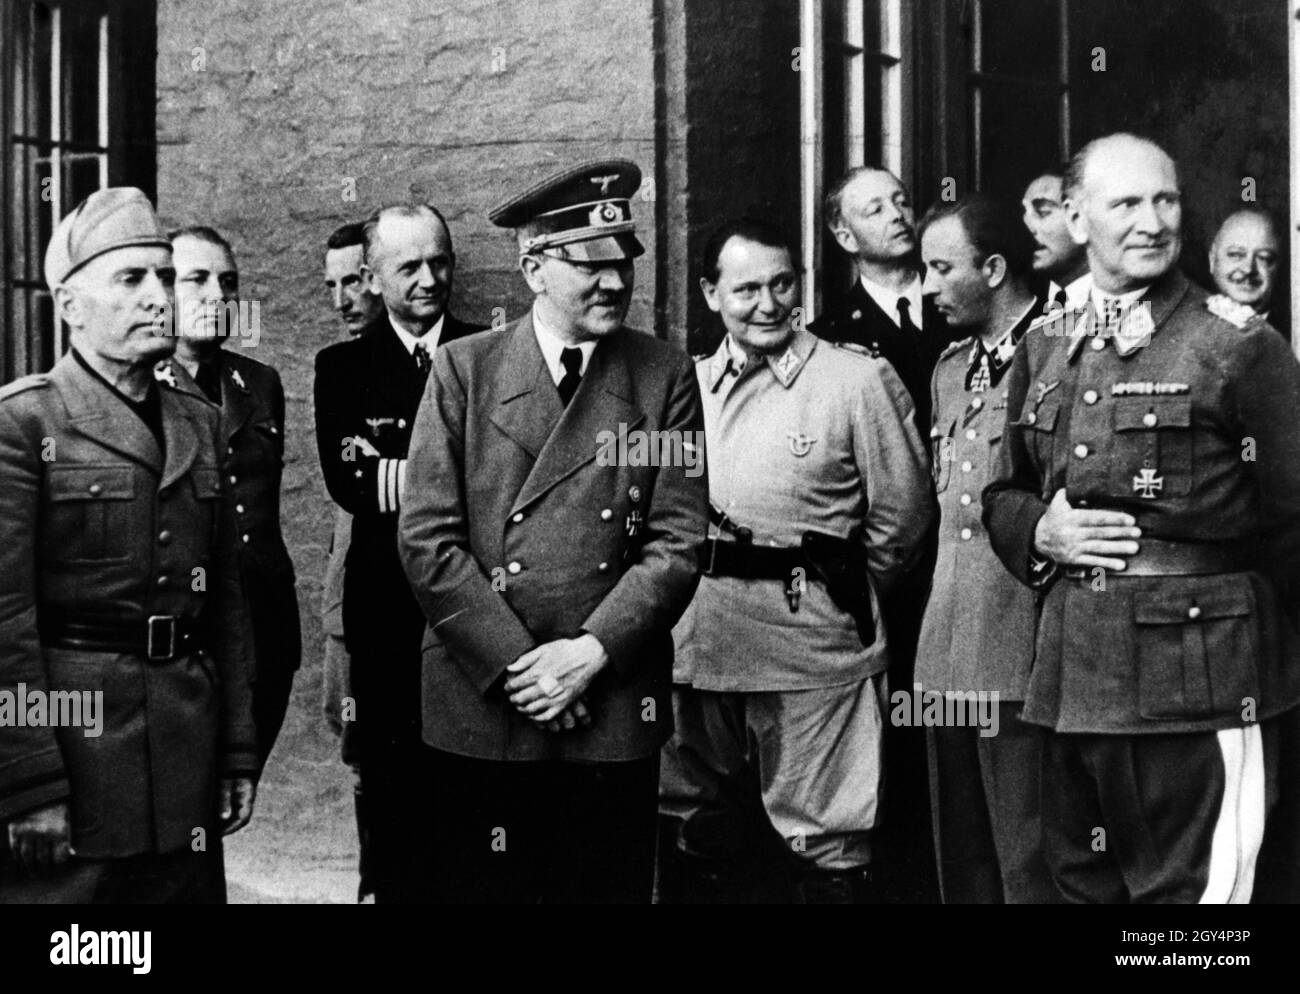 Da sinistra: Benito Mussolini, Martin Bormann, Karl Dönitz, Adolf Hitler, Hermann Göring, Hermann Fegelein, Generaloberst Loerzer. Poche ore prima, il tentativo di bomba della resistenza militare contro Adolf Hitler era fallito. [traduzione automatizzata] Foto Stock